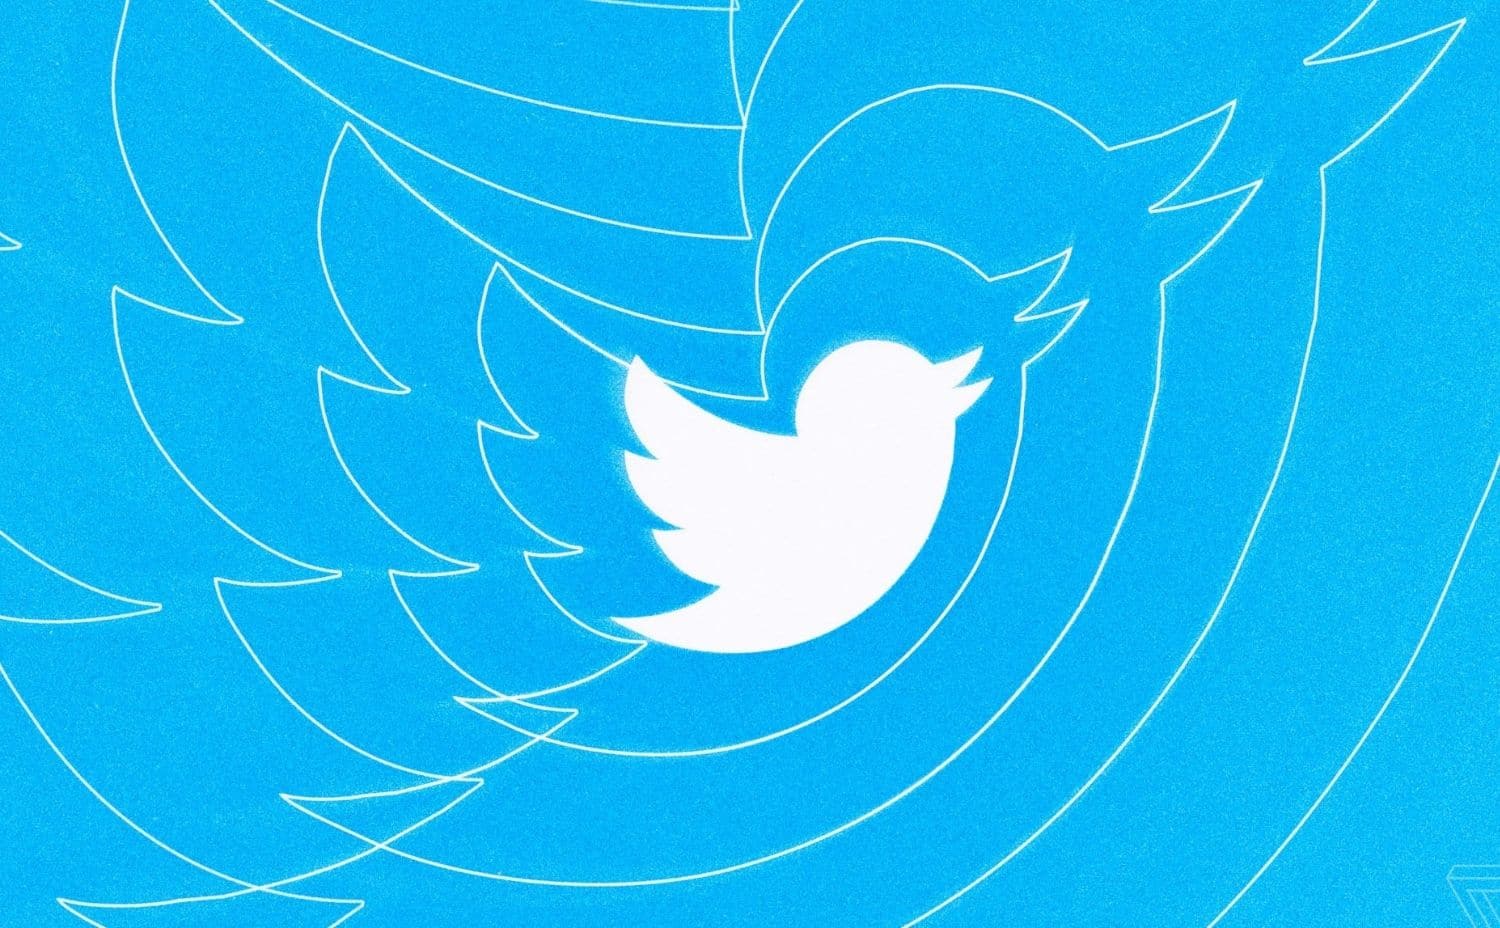 تويتر يتيح لك الإعجاب بالتغريدات عن طريق النقر المزدوج عليها